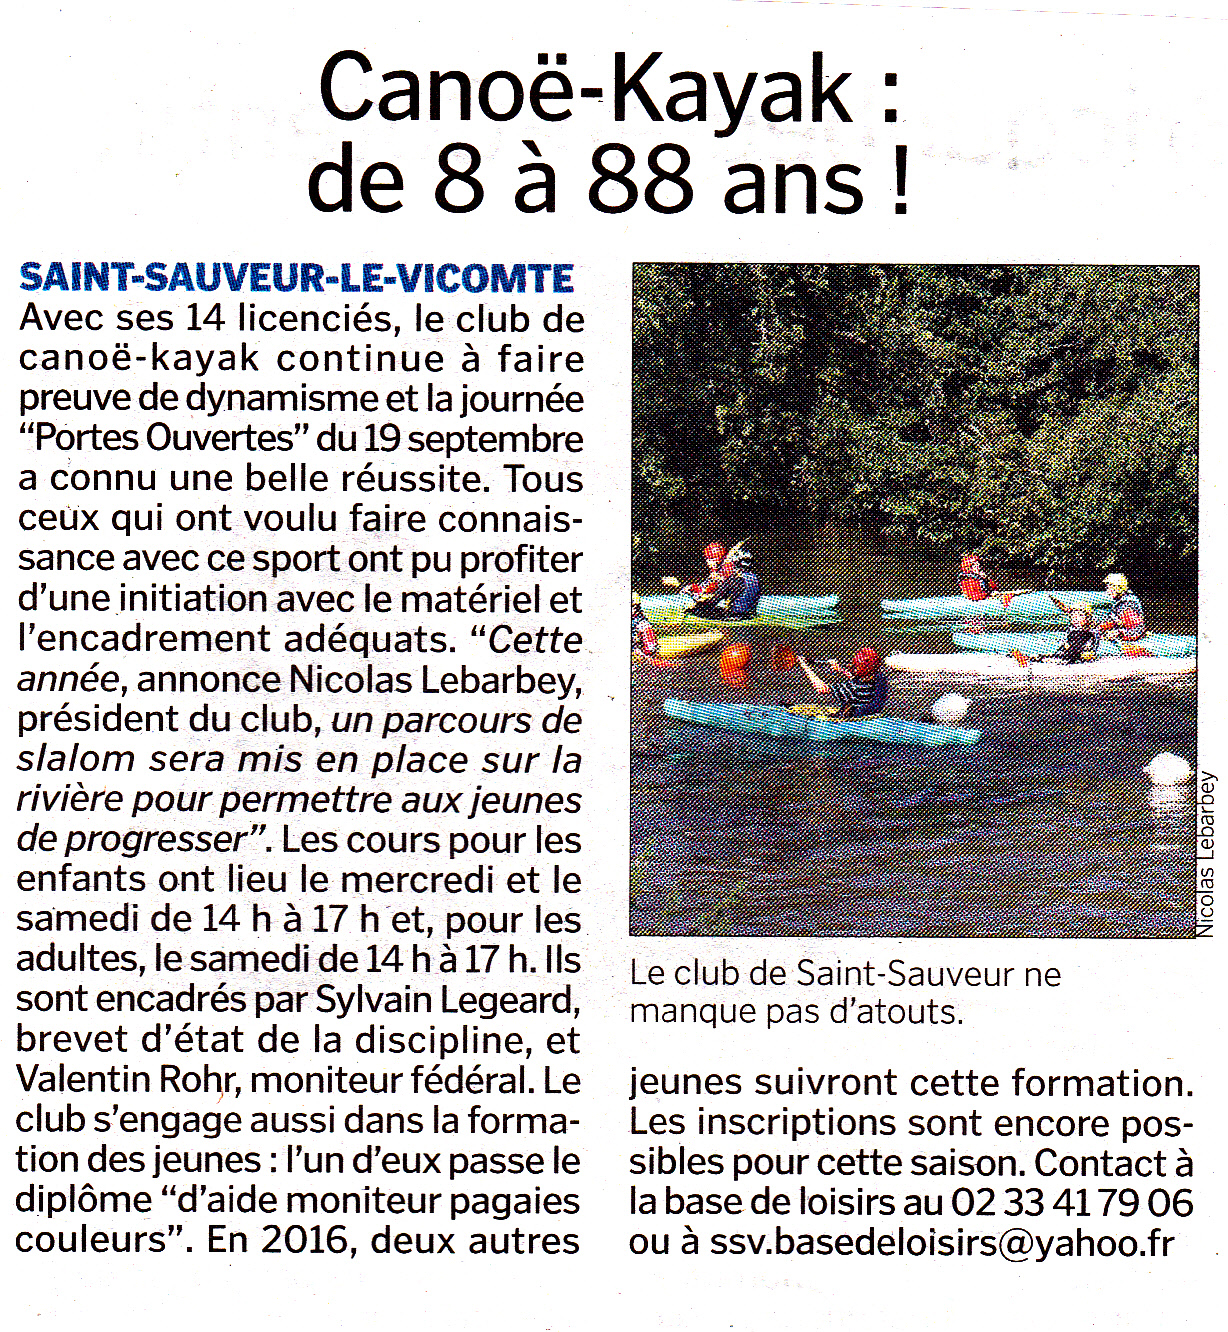 kayak saint sauveur le vicomte